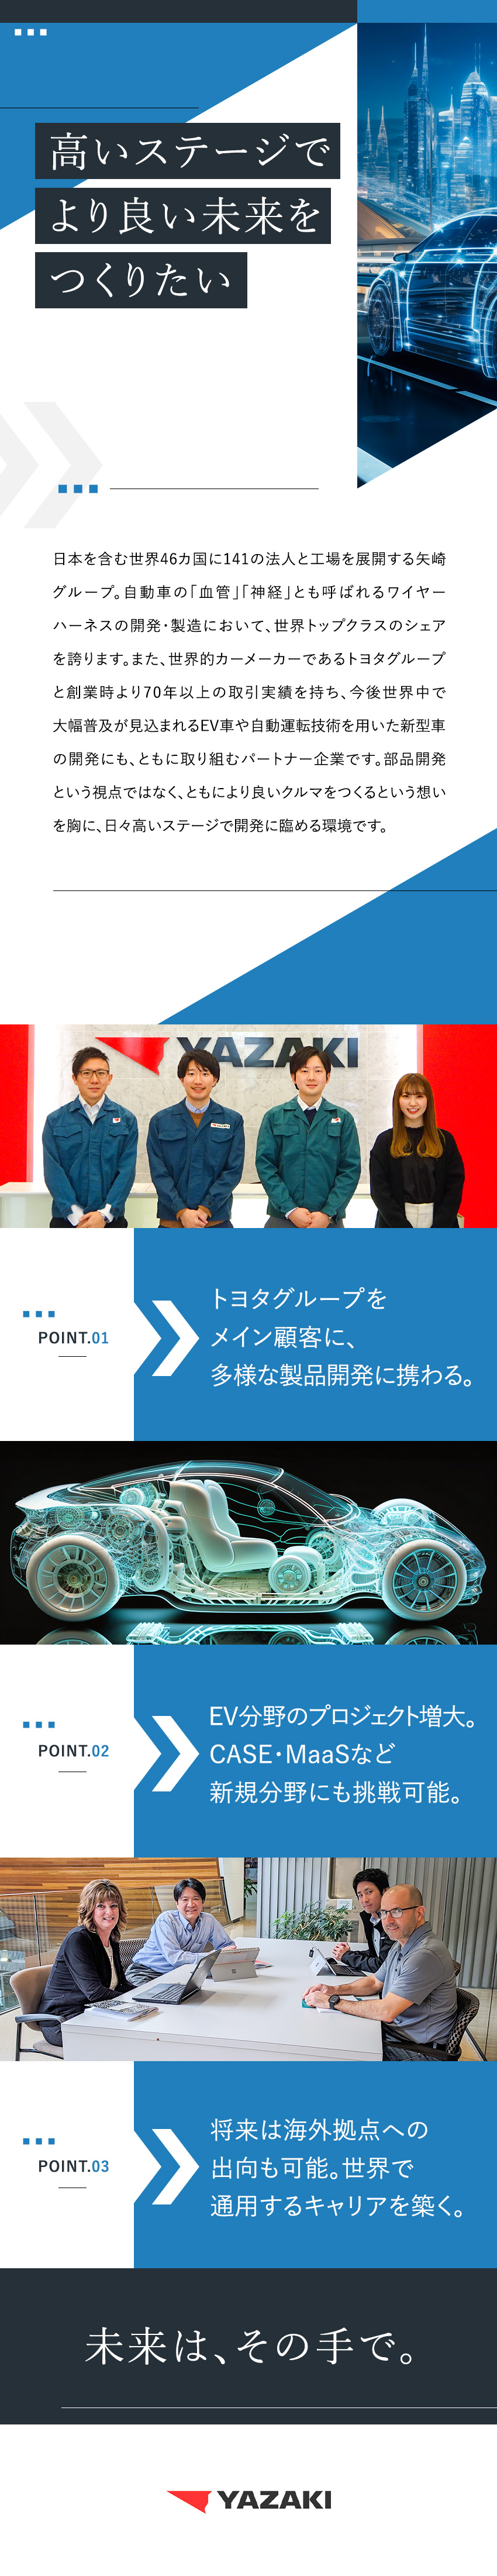 矢崎部品株式会社 ワイヤーハーネスの開発・設計／トヨタグループがメイン顧客